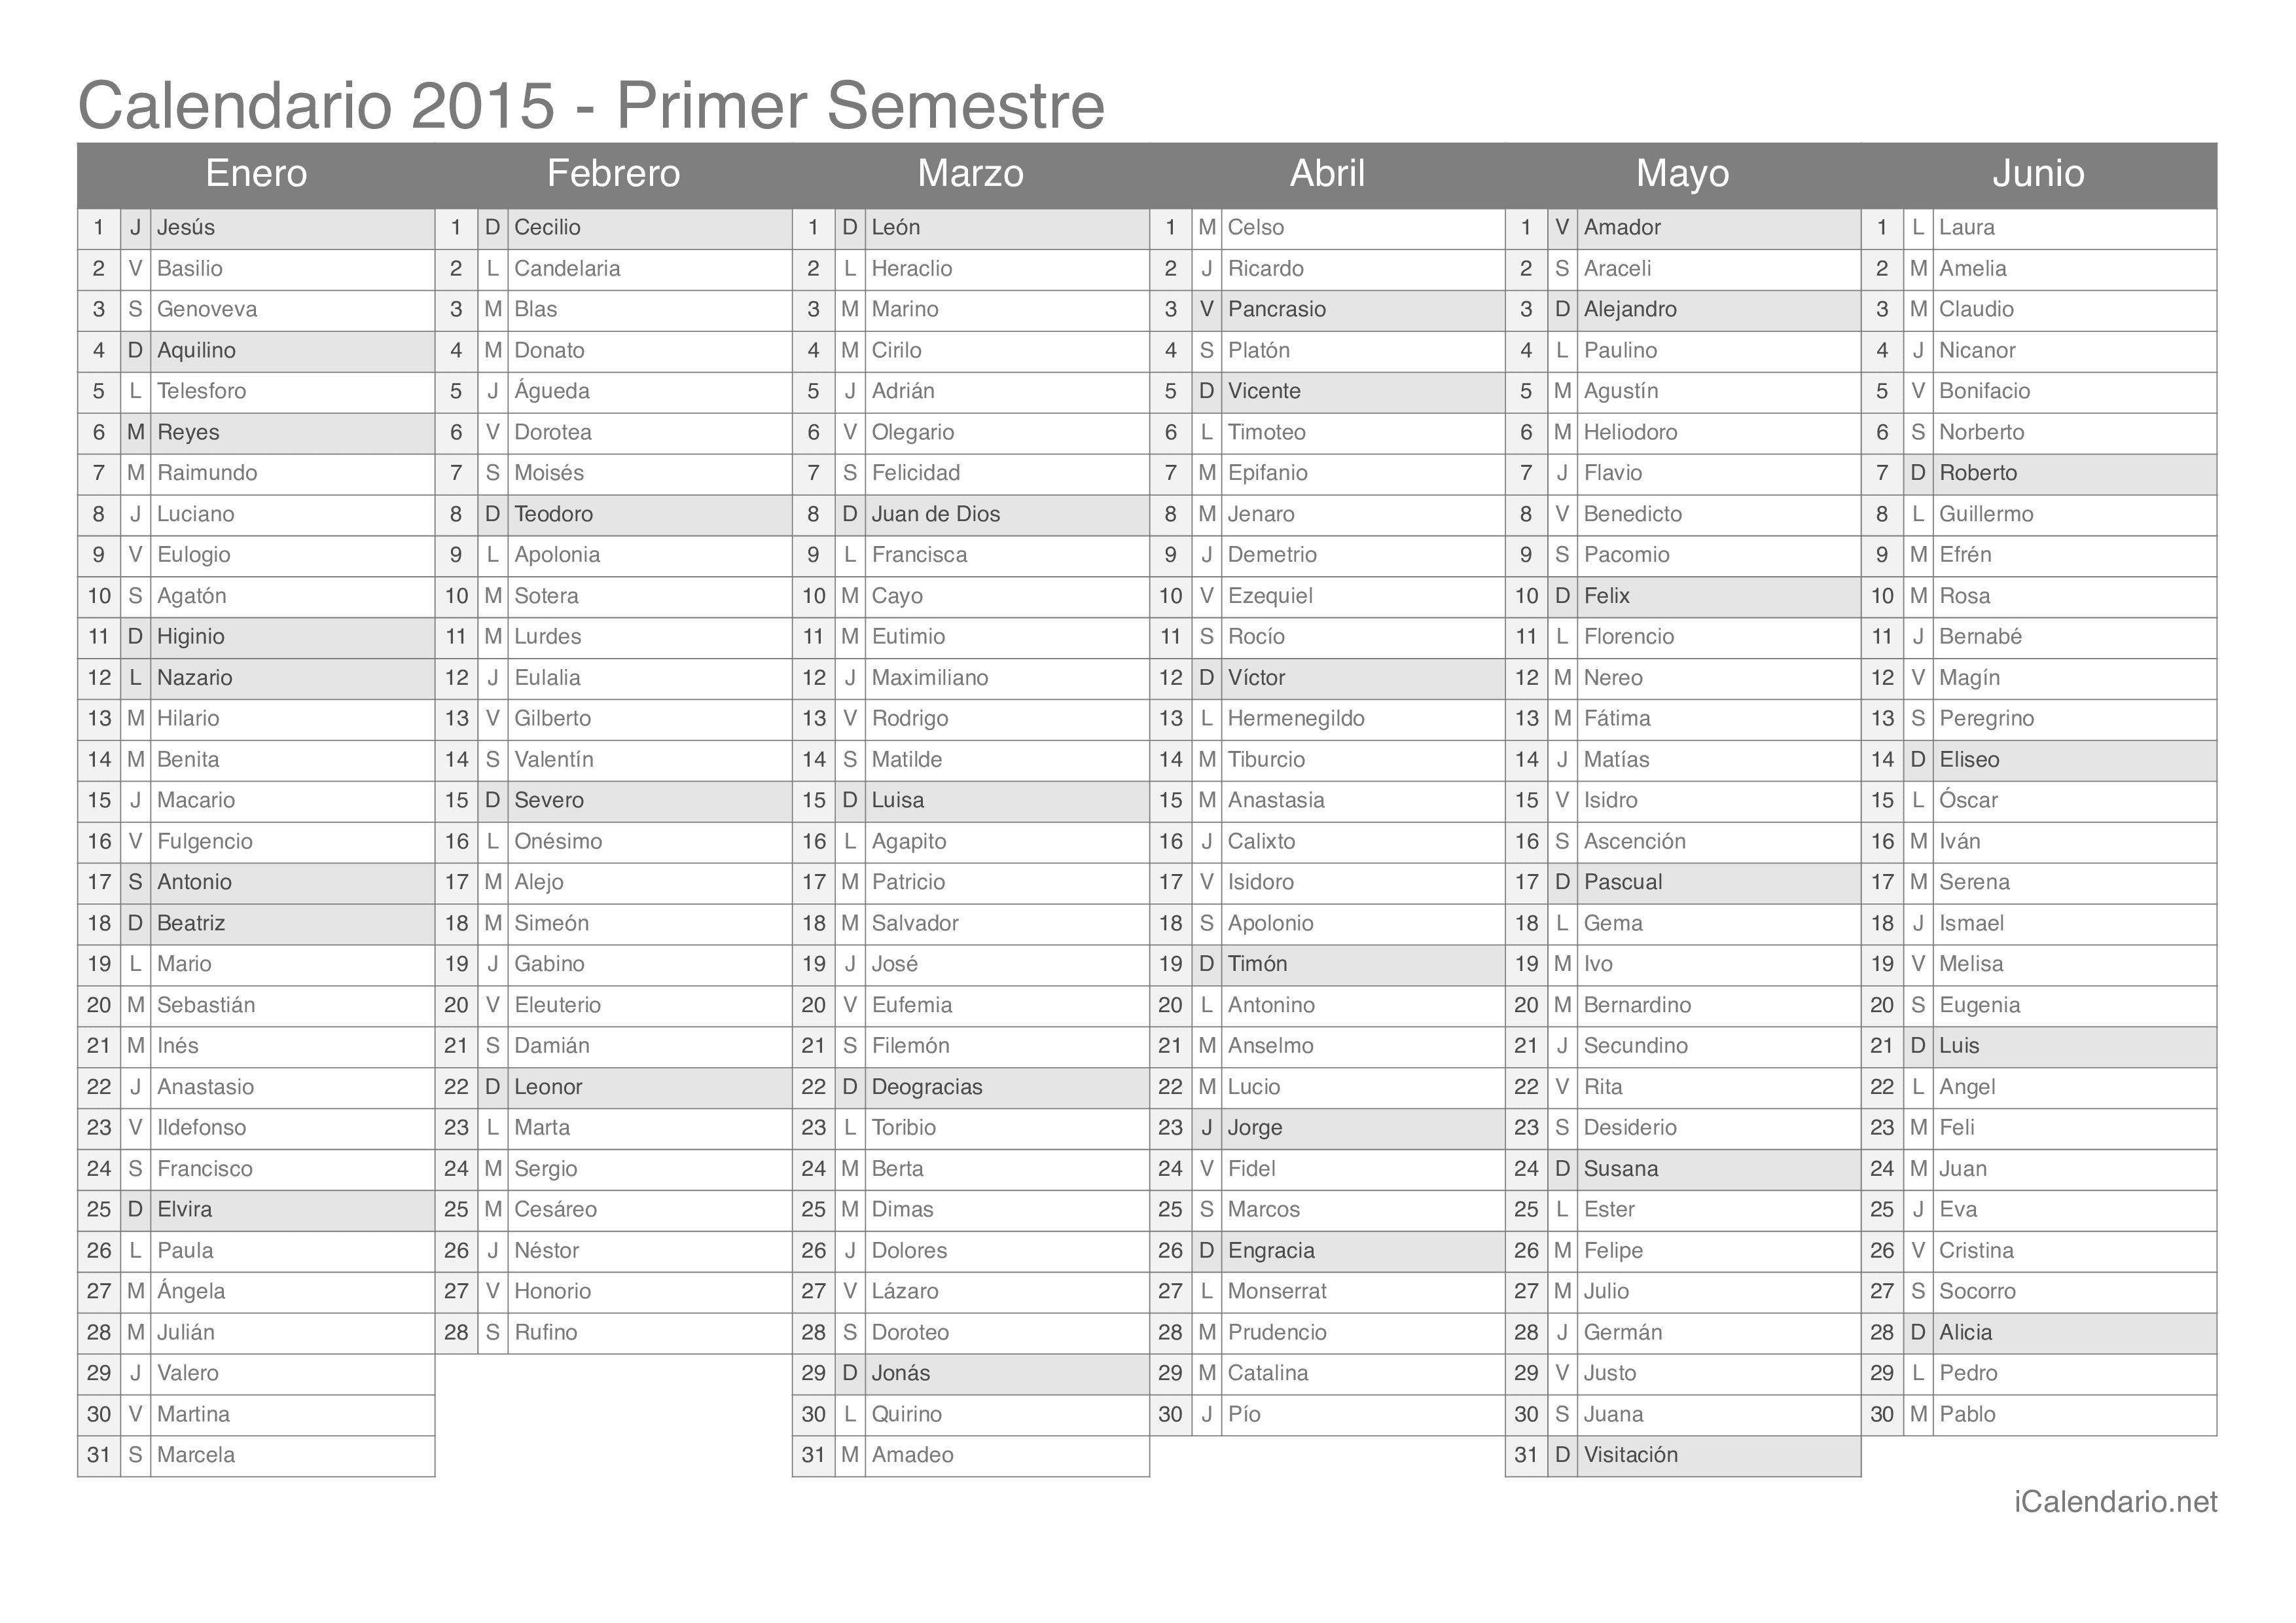 Calendario por semestre 2015 com festa do dia